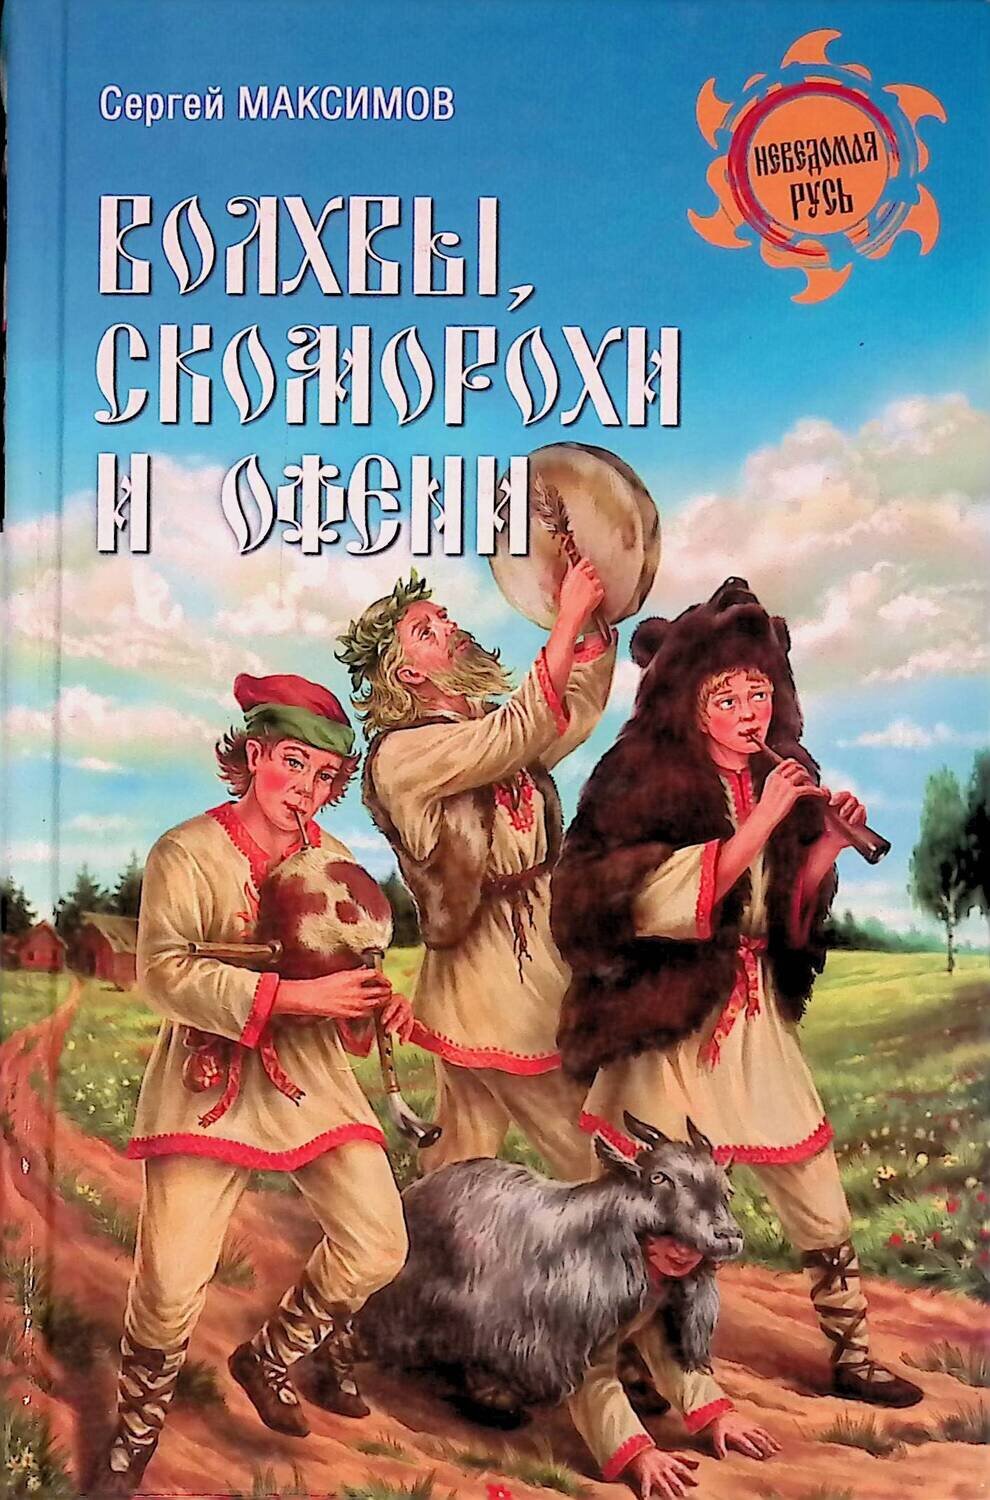 Волхвы, скоморохи и офени; Максимов Сергей Григорьевич